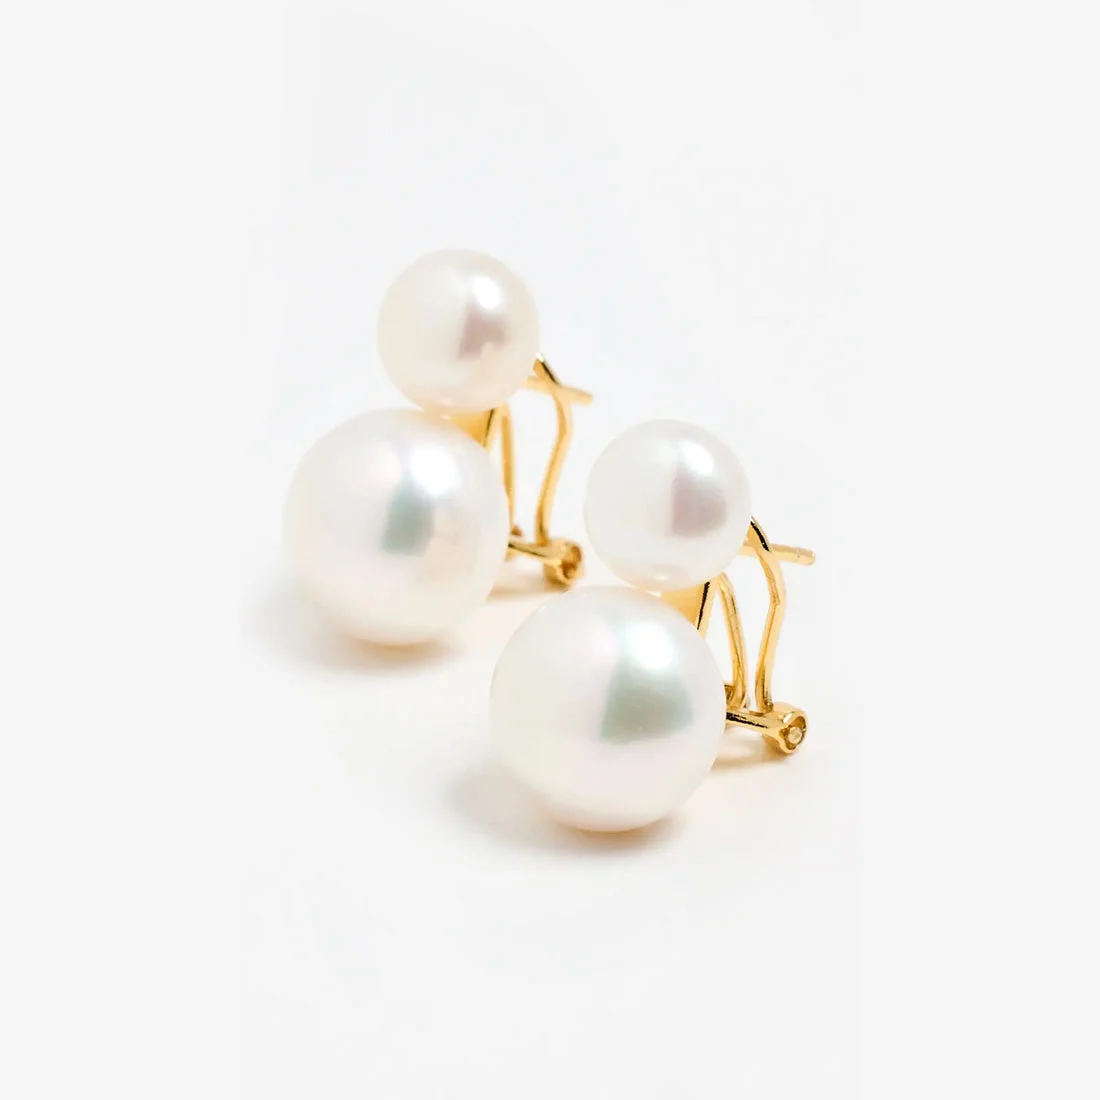 Jil Sander Blossom Pearl Drop Earrings - Farfetch